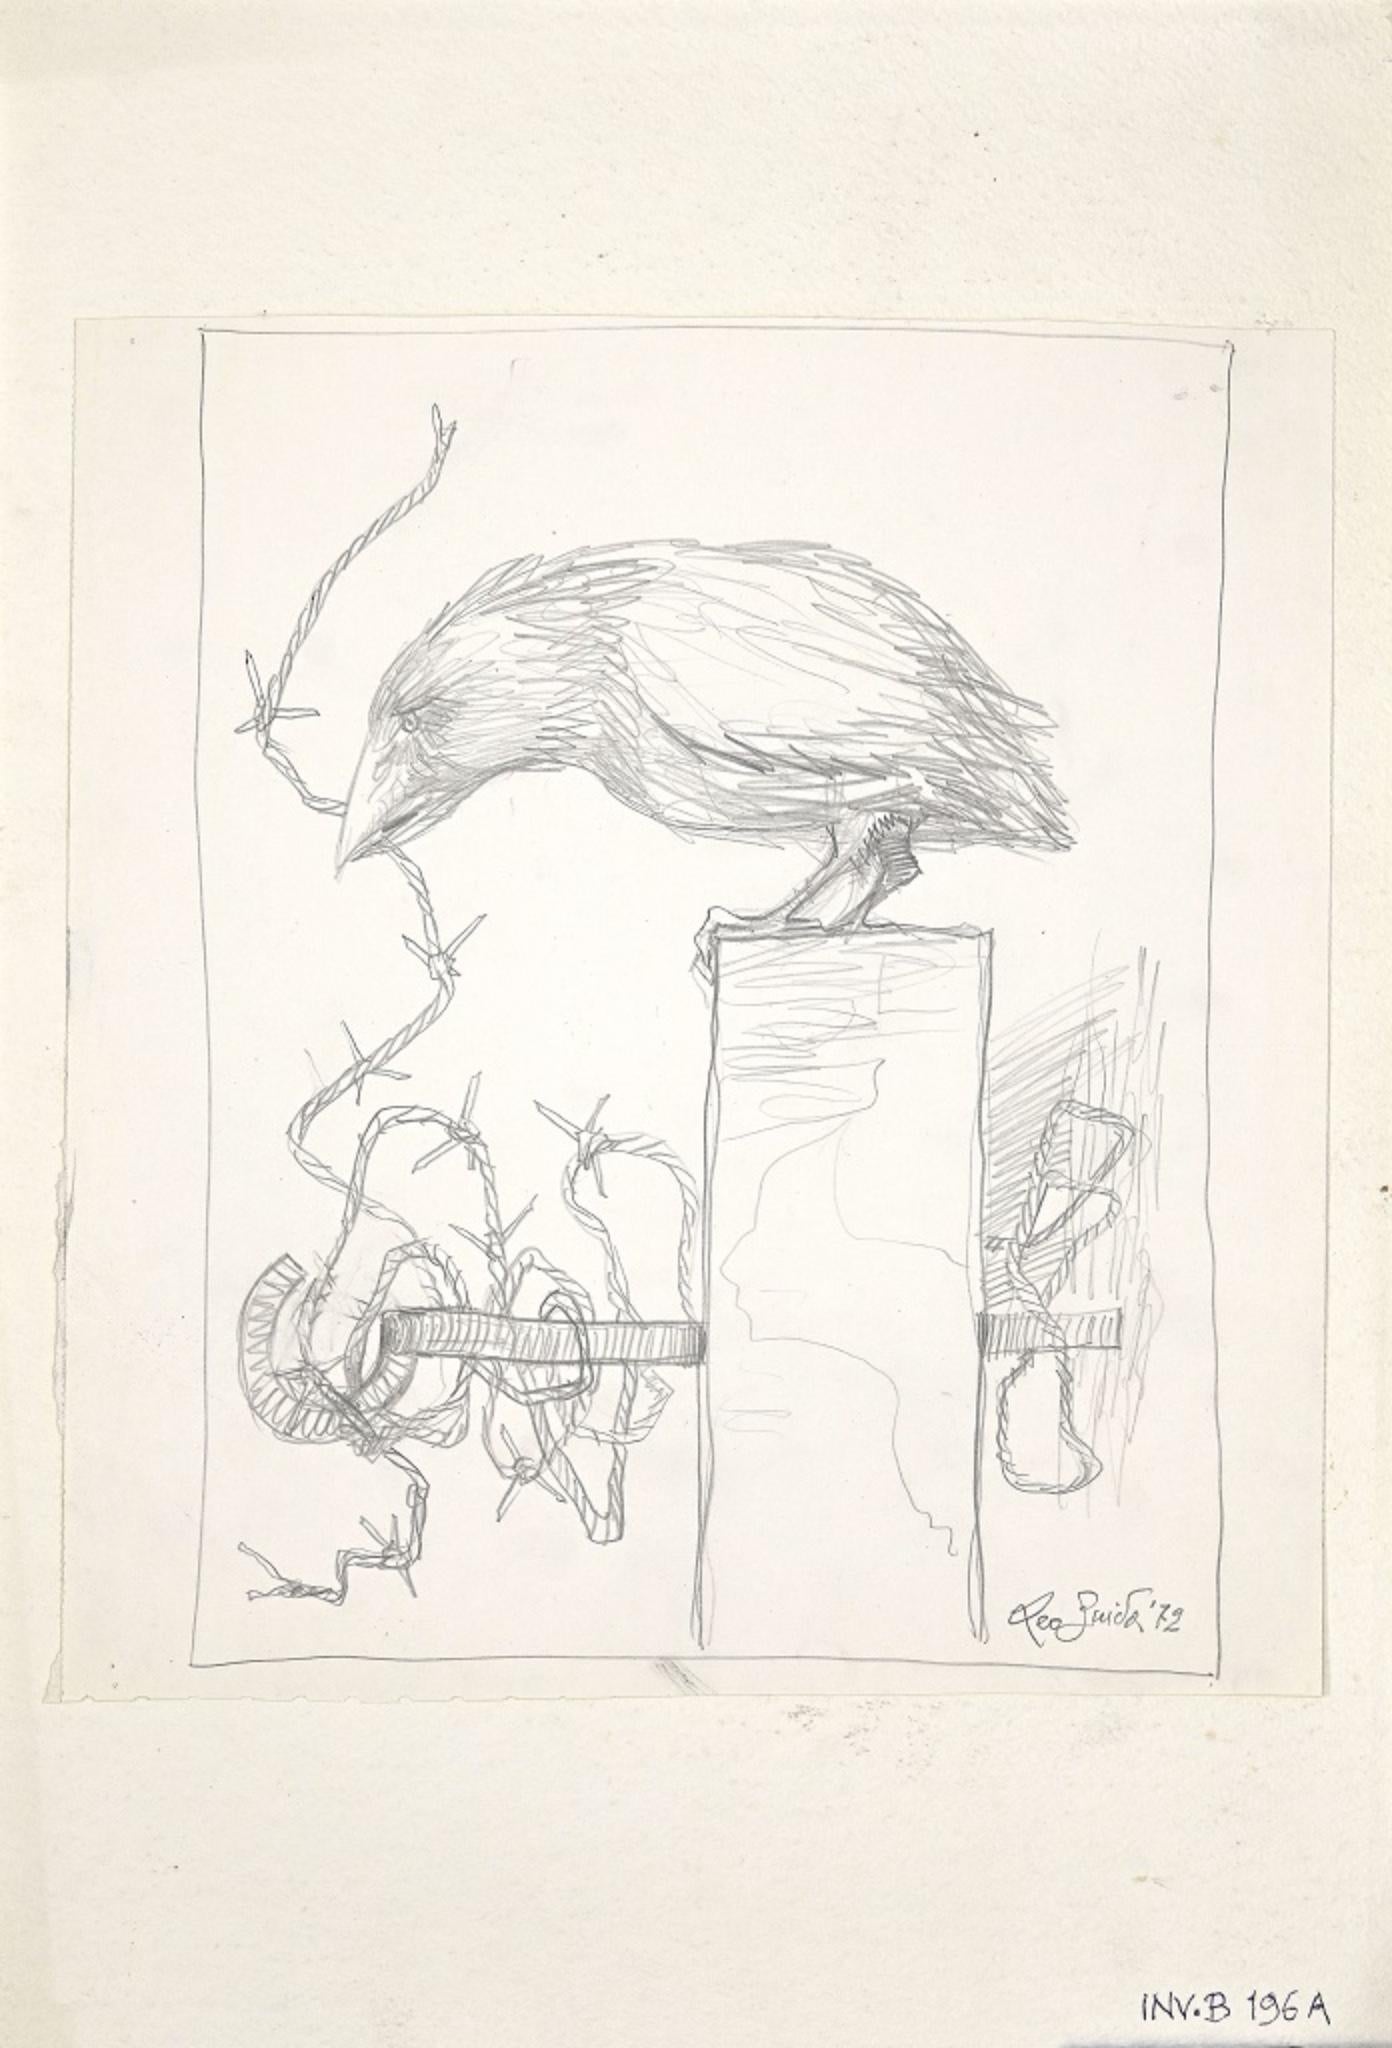 The Crow ist ein originales zeitgenössisches Kunstwerk des italienischen Künstlers Leo Guida aus dem Jahr 1972.

Original-Zeichnung.

Datiert und handsigniert mit Bleistift am unteren rechten Rand: Leo Guida '72.  

Das Werk wird auf einen Karton